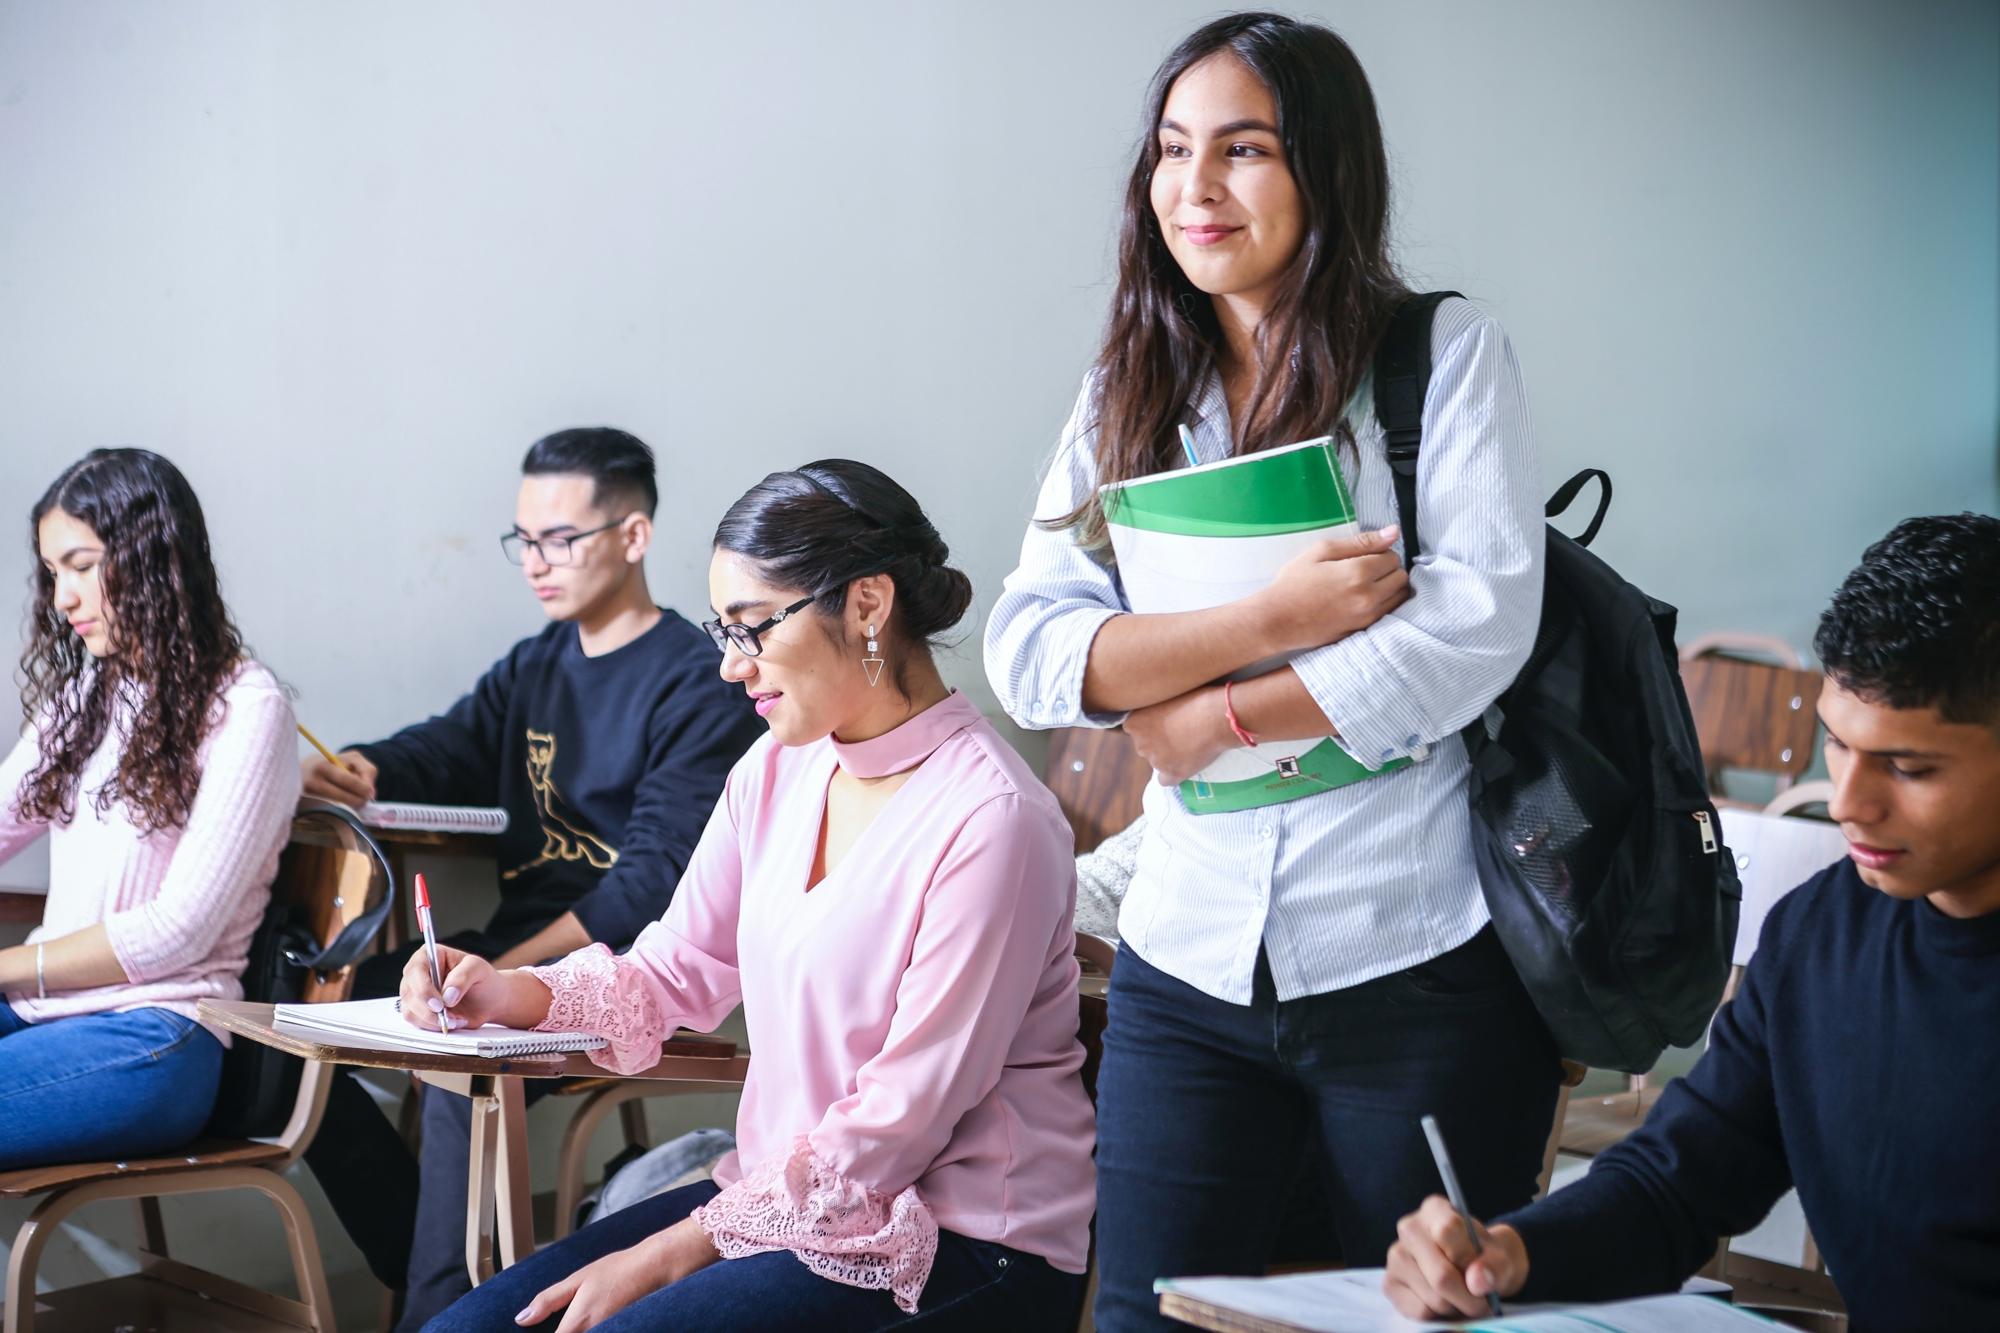 En ung kvinna med ryggsäck som går in i ett klassrum och håller i ett anteckningsblock. I klassrummet sitter det elever vid bänkar som sitter och skriver.